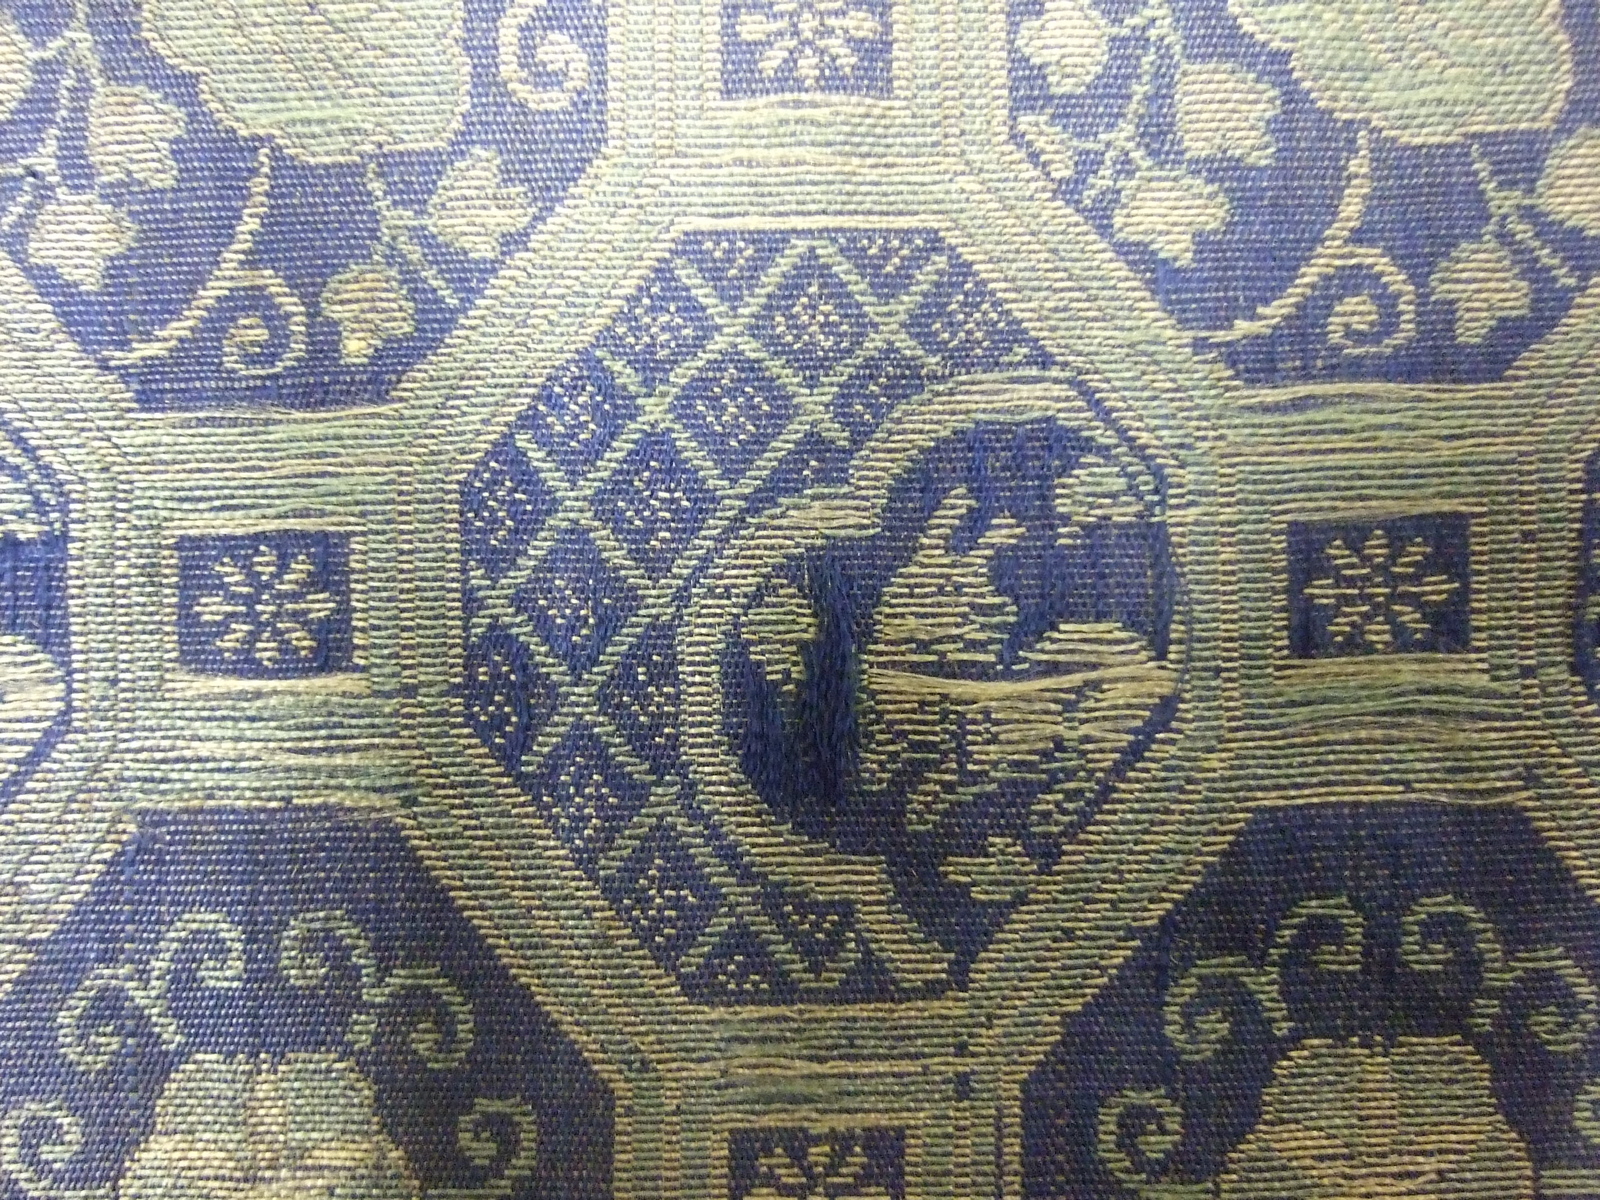 Très long morceau de tissu asiatique, motifs de médaillons alternés vert doré sur fond bleu. (1/2) (titre factice)